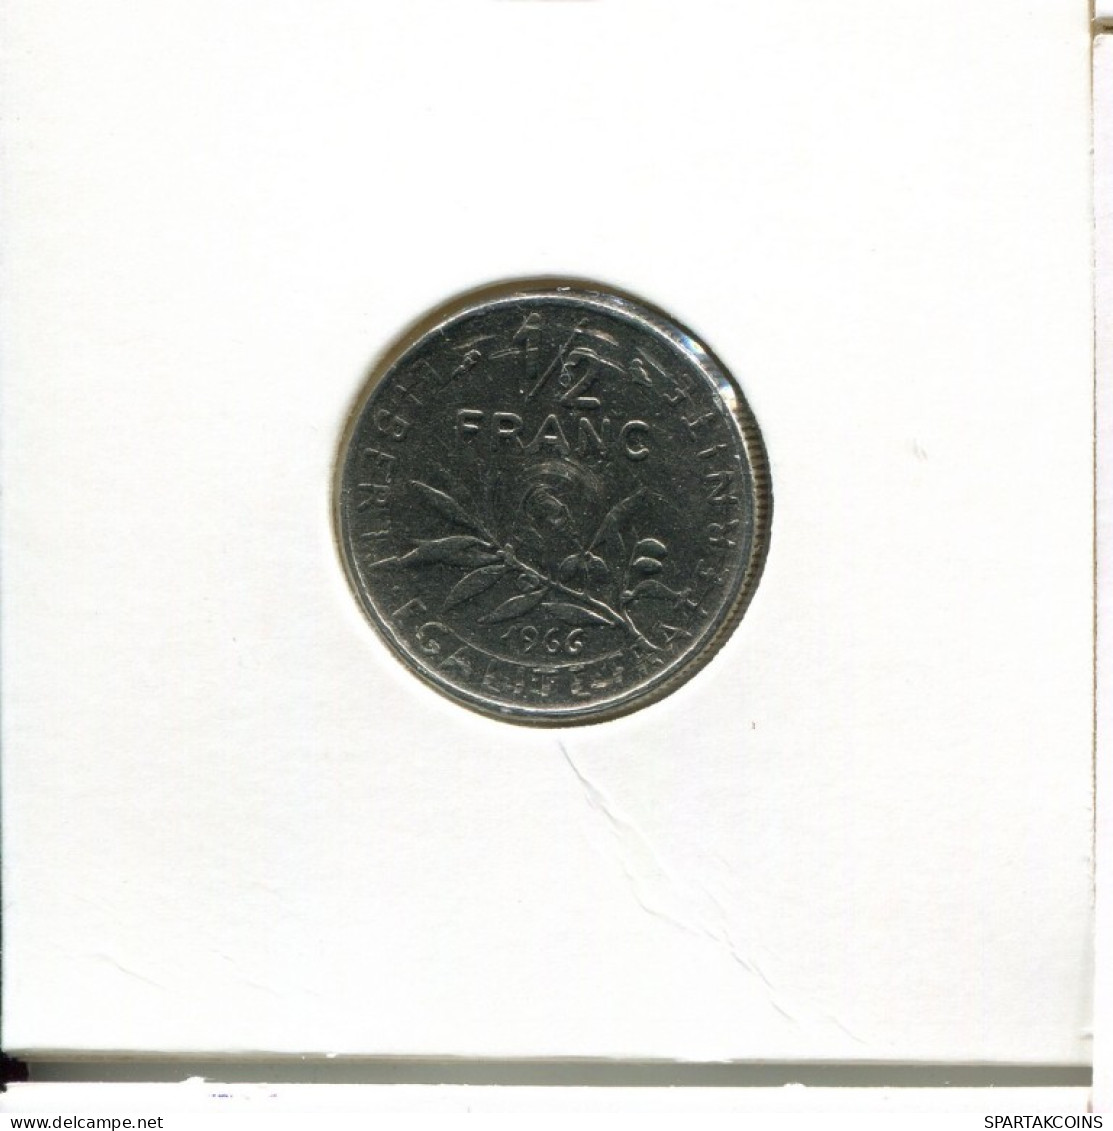 1/2 FRANC 1966 FRANCE Coin French Coin #AK512.U.A - 1/2 Franc